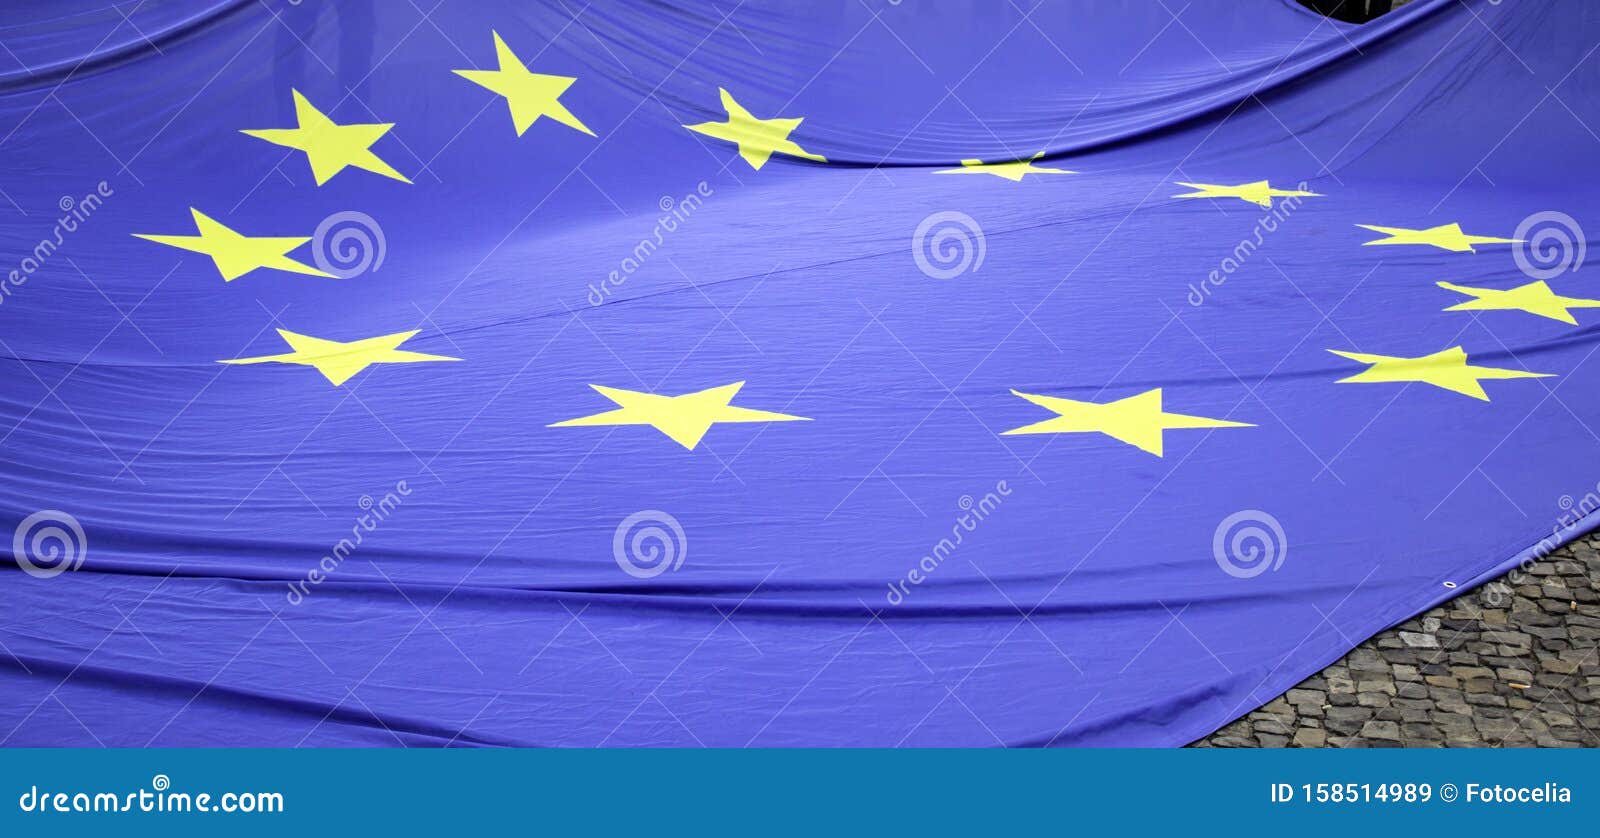 超过 40 张关于“欧盟国旗”和“欧盟”的免费图片 - Pixabay